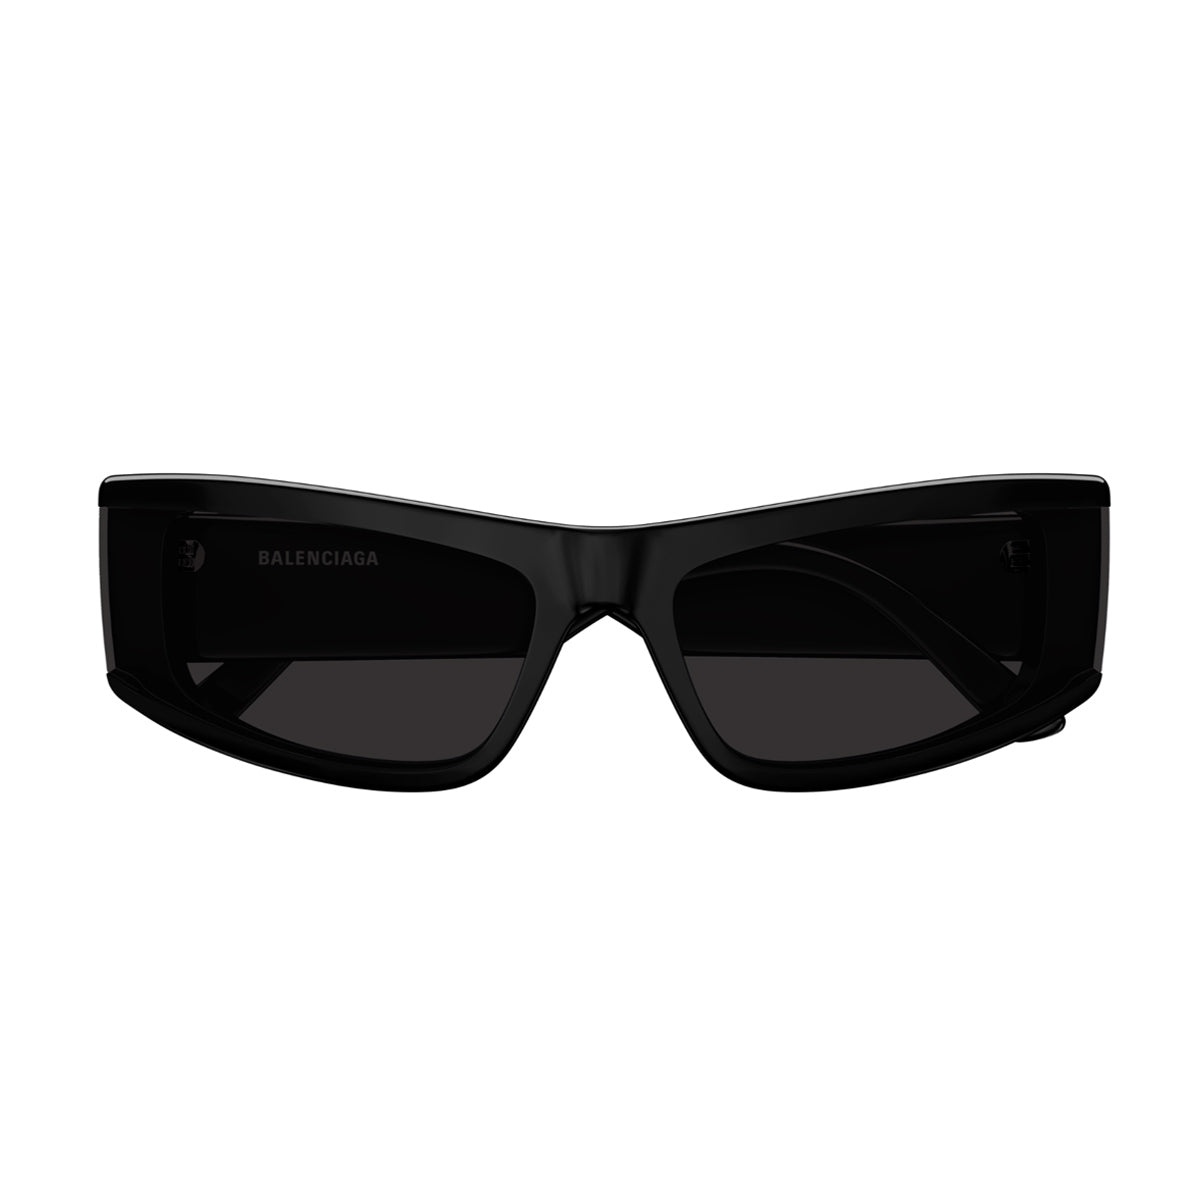 BB0301S 001-Occhiali da sole-Balenciaga-Balenciaga presenta la sua più recente collezione di occhiali da sole, caratterizzata da un'audace estetica contemporanea. Questa linea si contraddistingue per le forme oversize e le geometrie uniche, offrendo un'autentica dichiarazione di stile, perfetta per chi cerca un accessorio moderno e sofisticato per completare il proprio look. In particolare, il modello BB0301S presenta una montatura rettangolare stretta in acetato, con audaci volumi che si distinguono per la